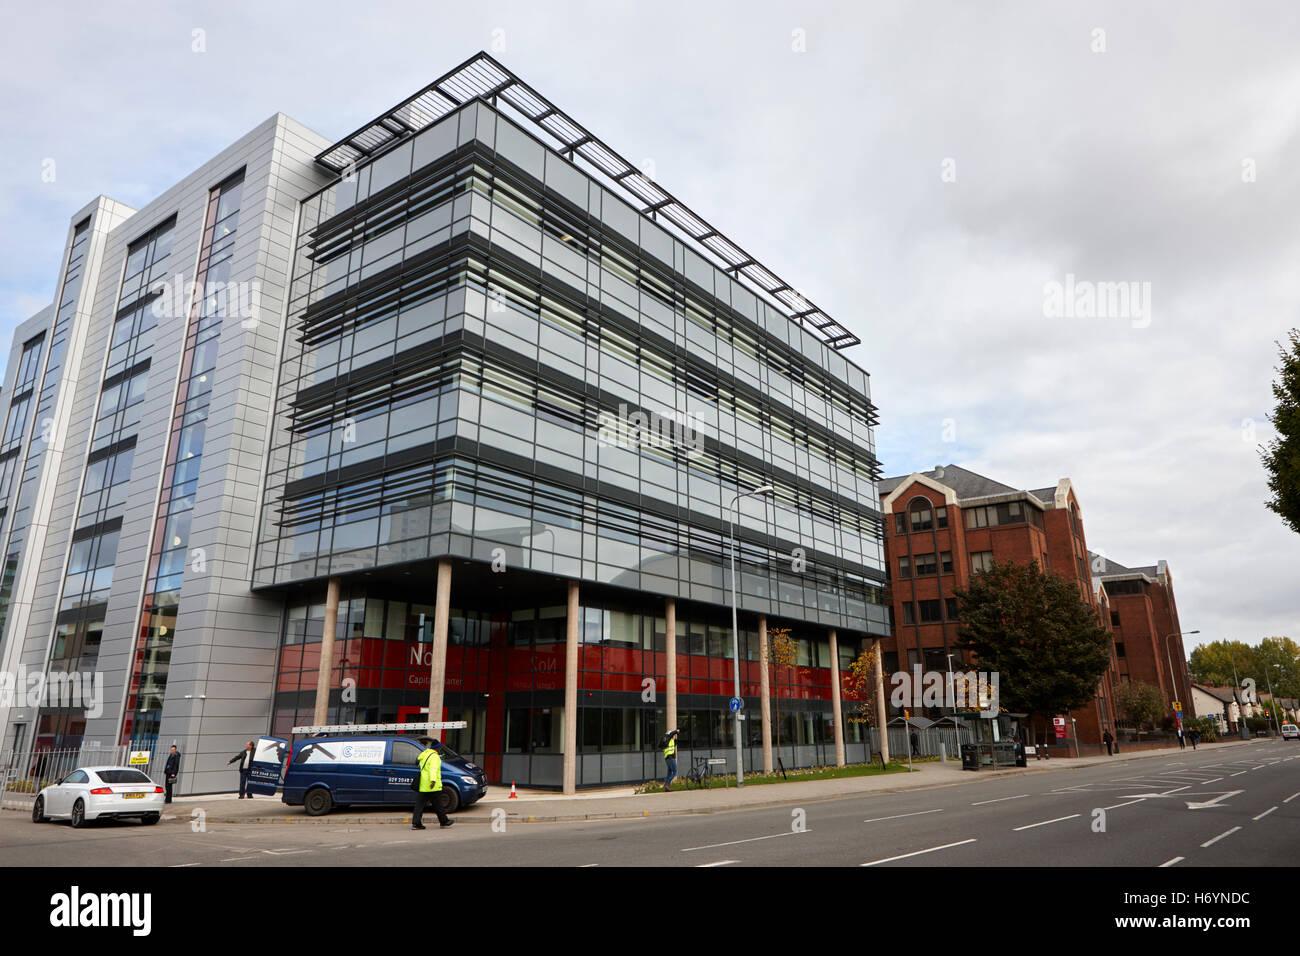 La salud pública en Gales no HQ2 2 trimestre capital edificio de oficina Cardiff Gales Reino Unido Foto de stock